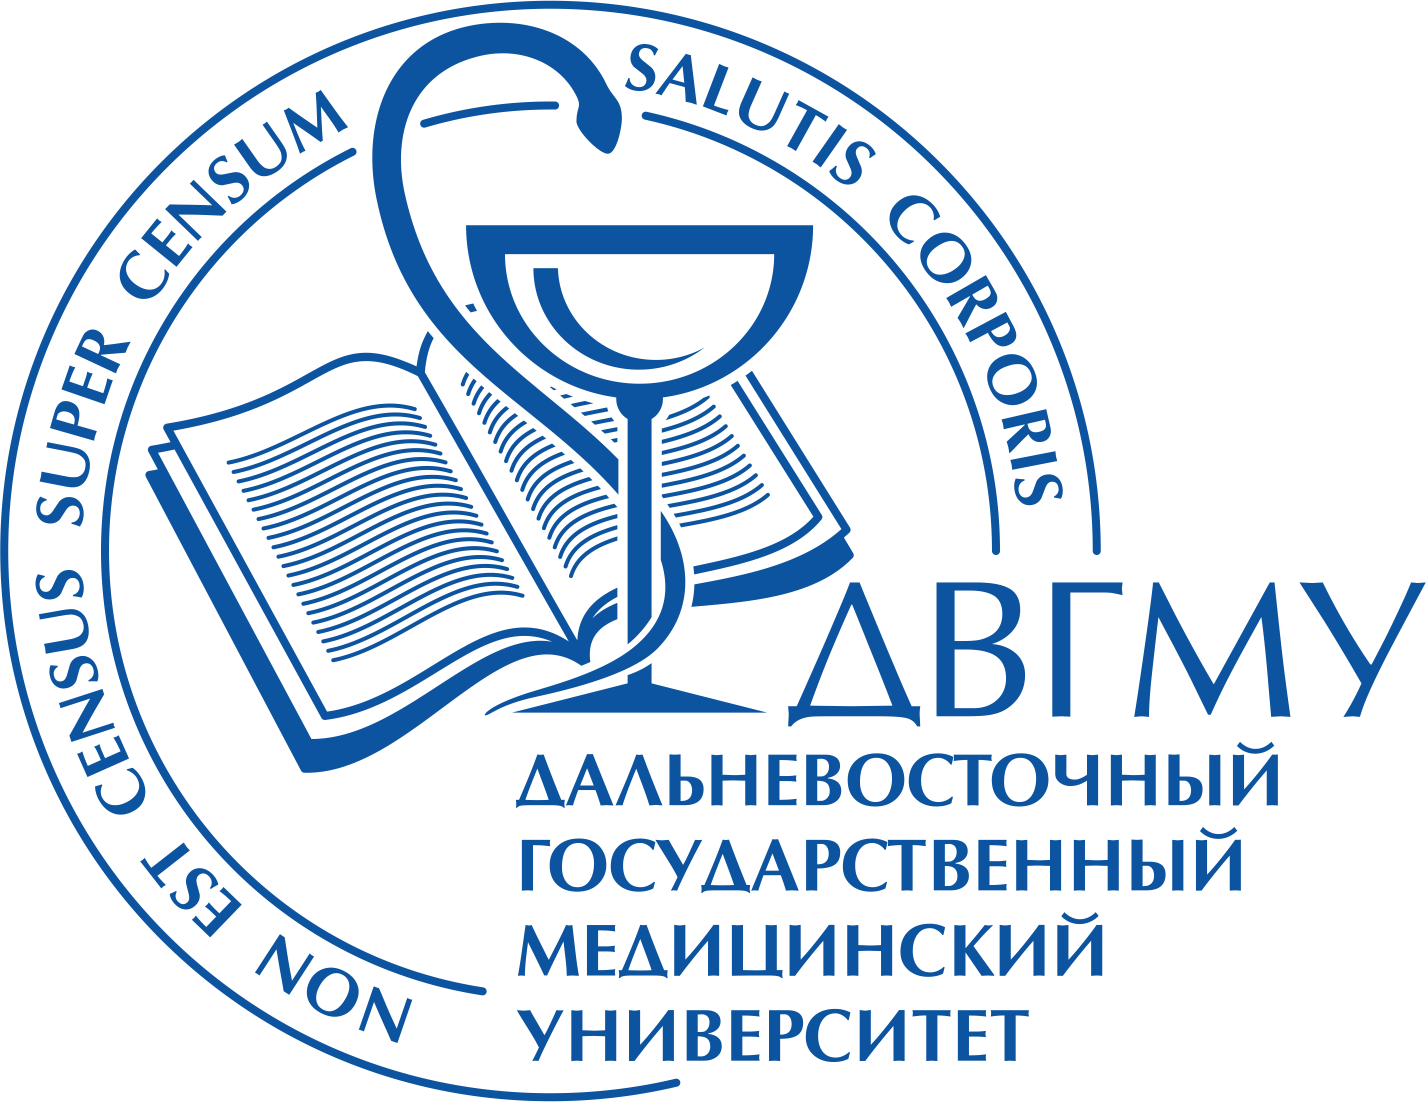 Мед институт Хабаровск. Логотип ДВГМУ. Дальневосточный государственный медицинский университет эмблема. Национальный медицинский сайт